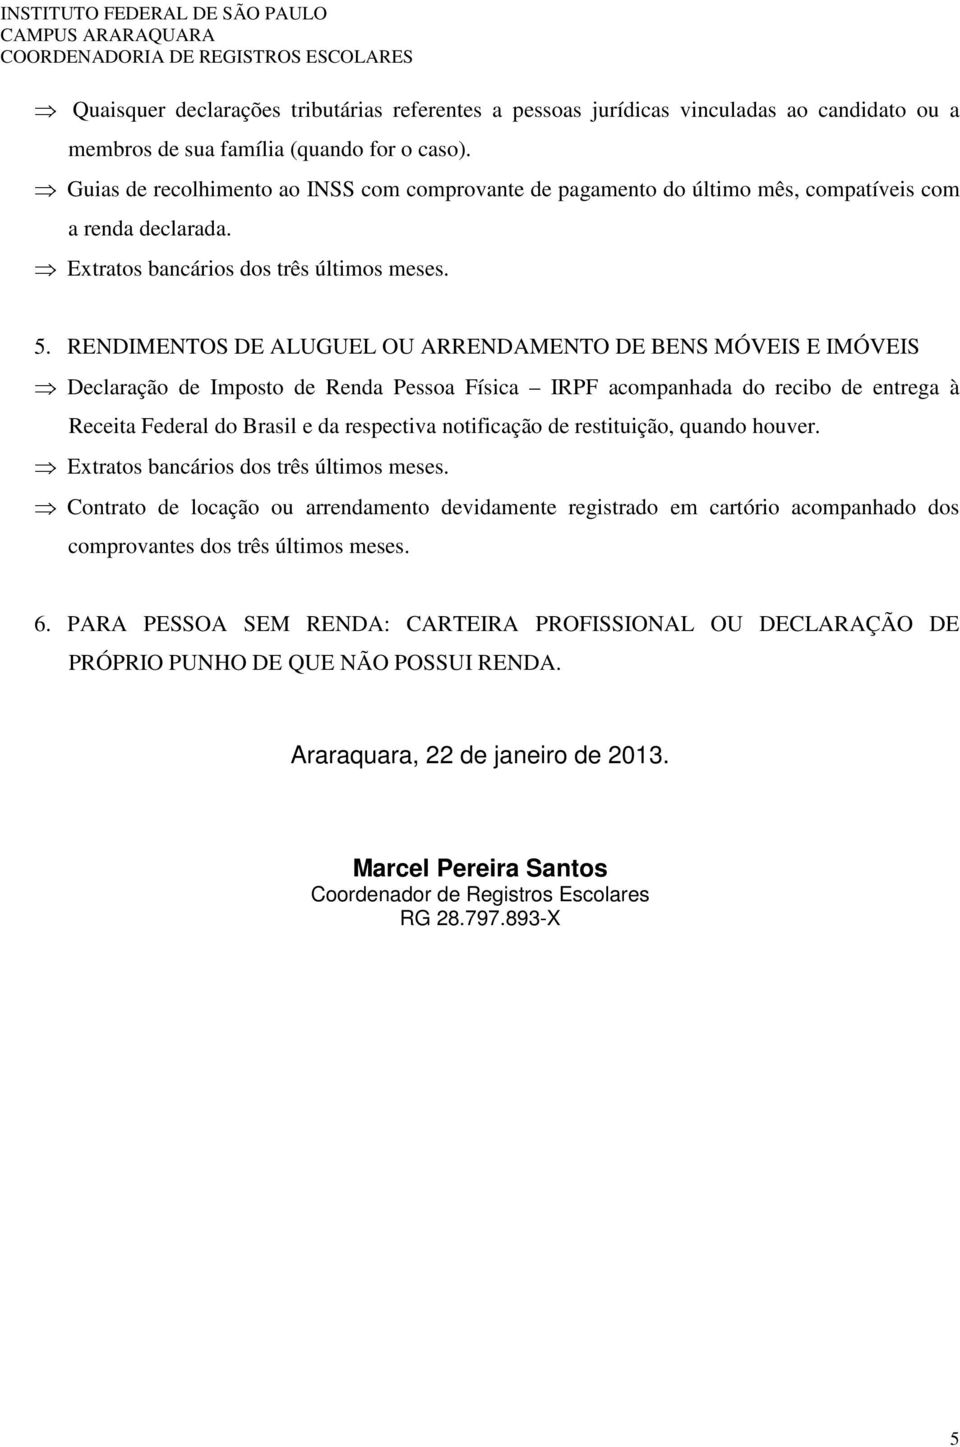 RENDIMENTOS DE ALUGUEL OU ARRENDAMENTO DE BENS MÓVEIS E IMÓVEIS Declaração de Imposto de Renda Pessoa Física IRPF acompanhada do recibo de entrega à Receita Federal do Brasil e da respectiva